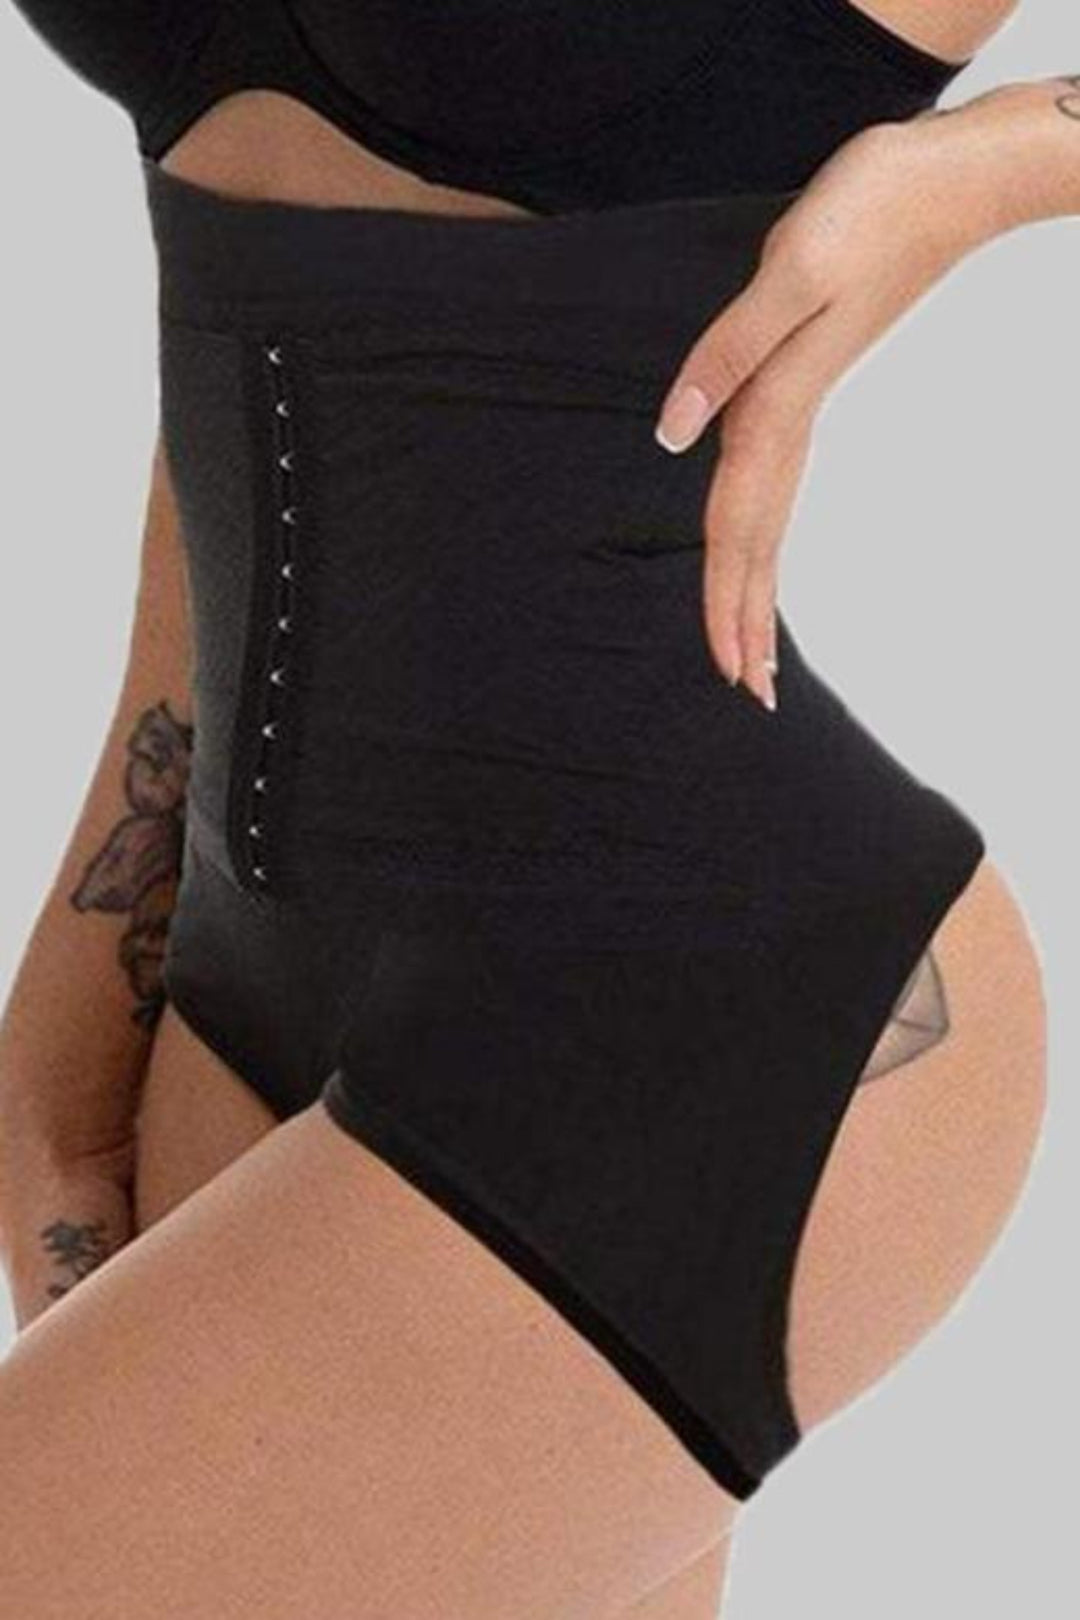 Black, XL) Women Butt Lifter Slim Body Shaper Tummy Control Girdle